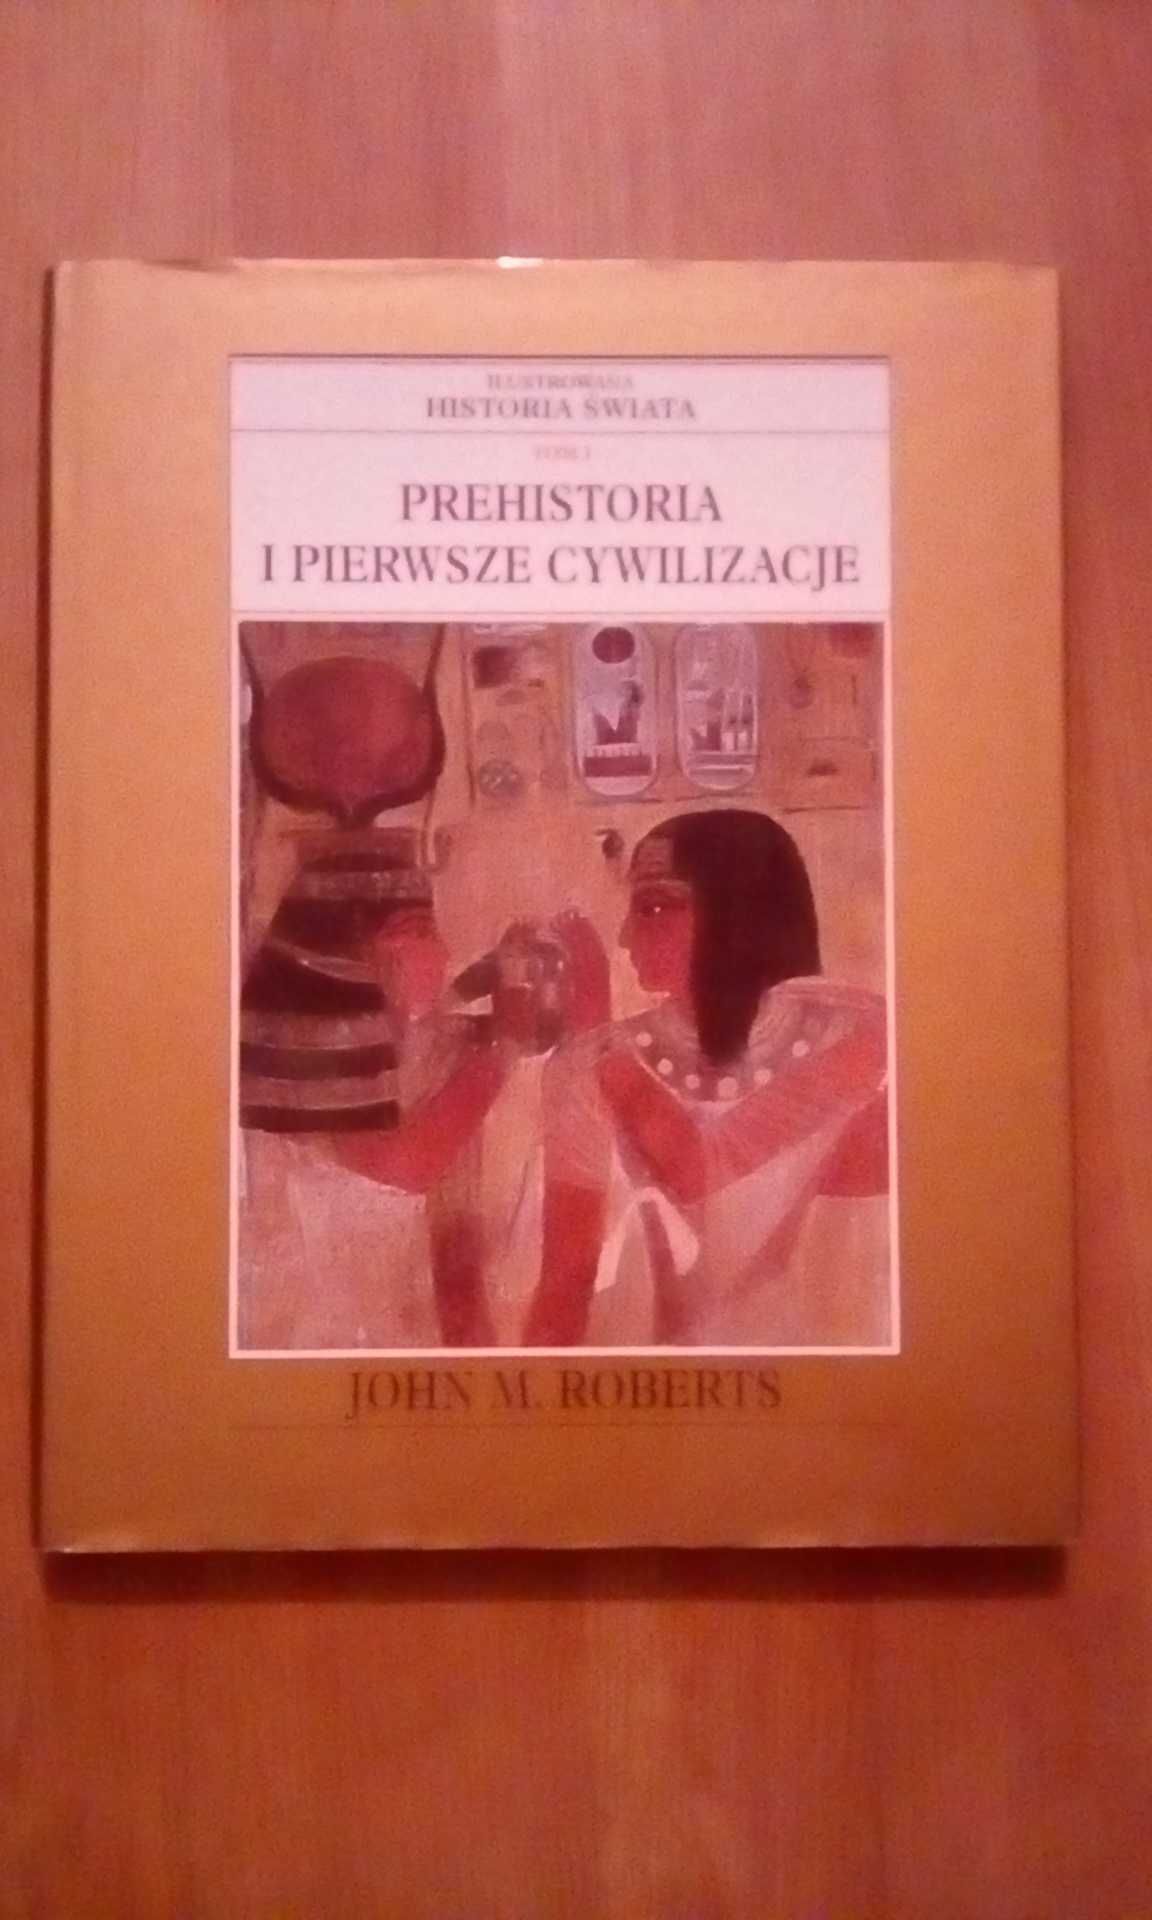 Ilustrowana historia świata"Prehistoria i pierwsze cywilizacje"